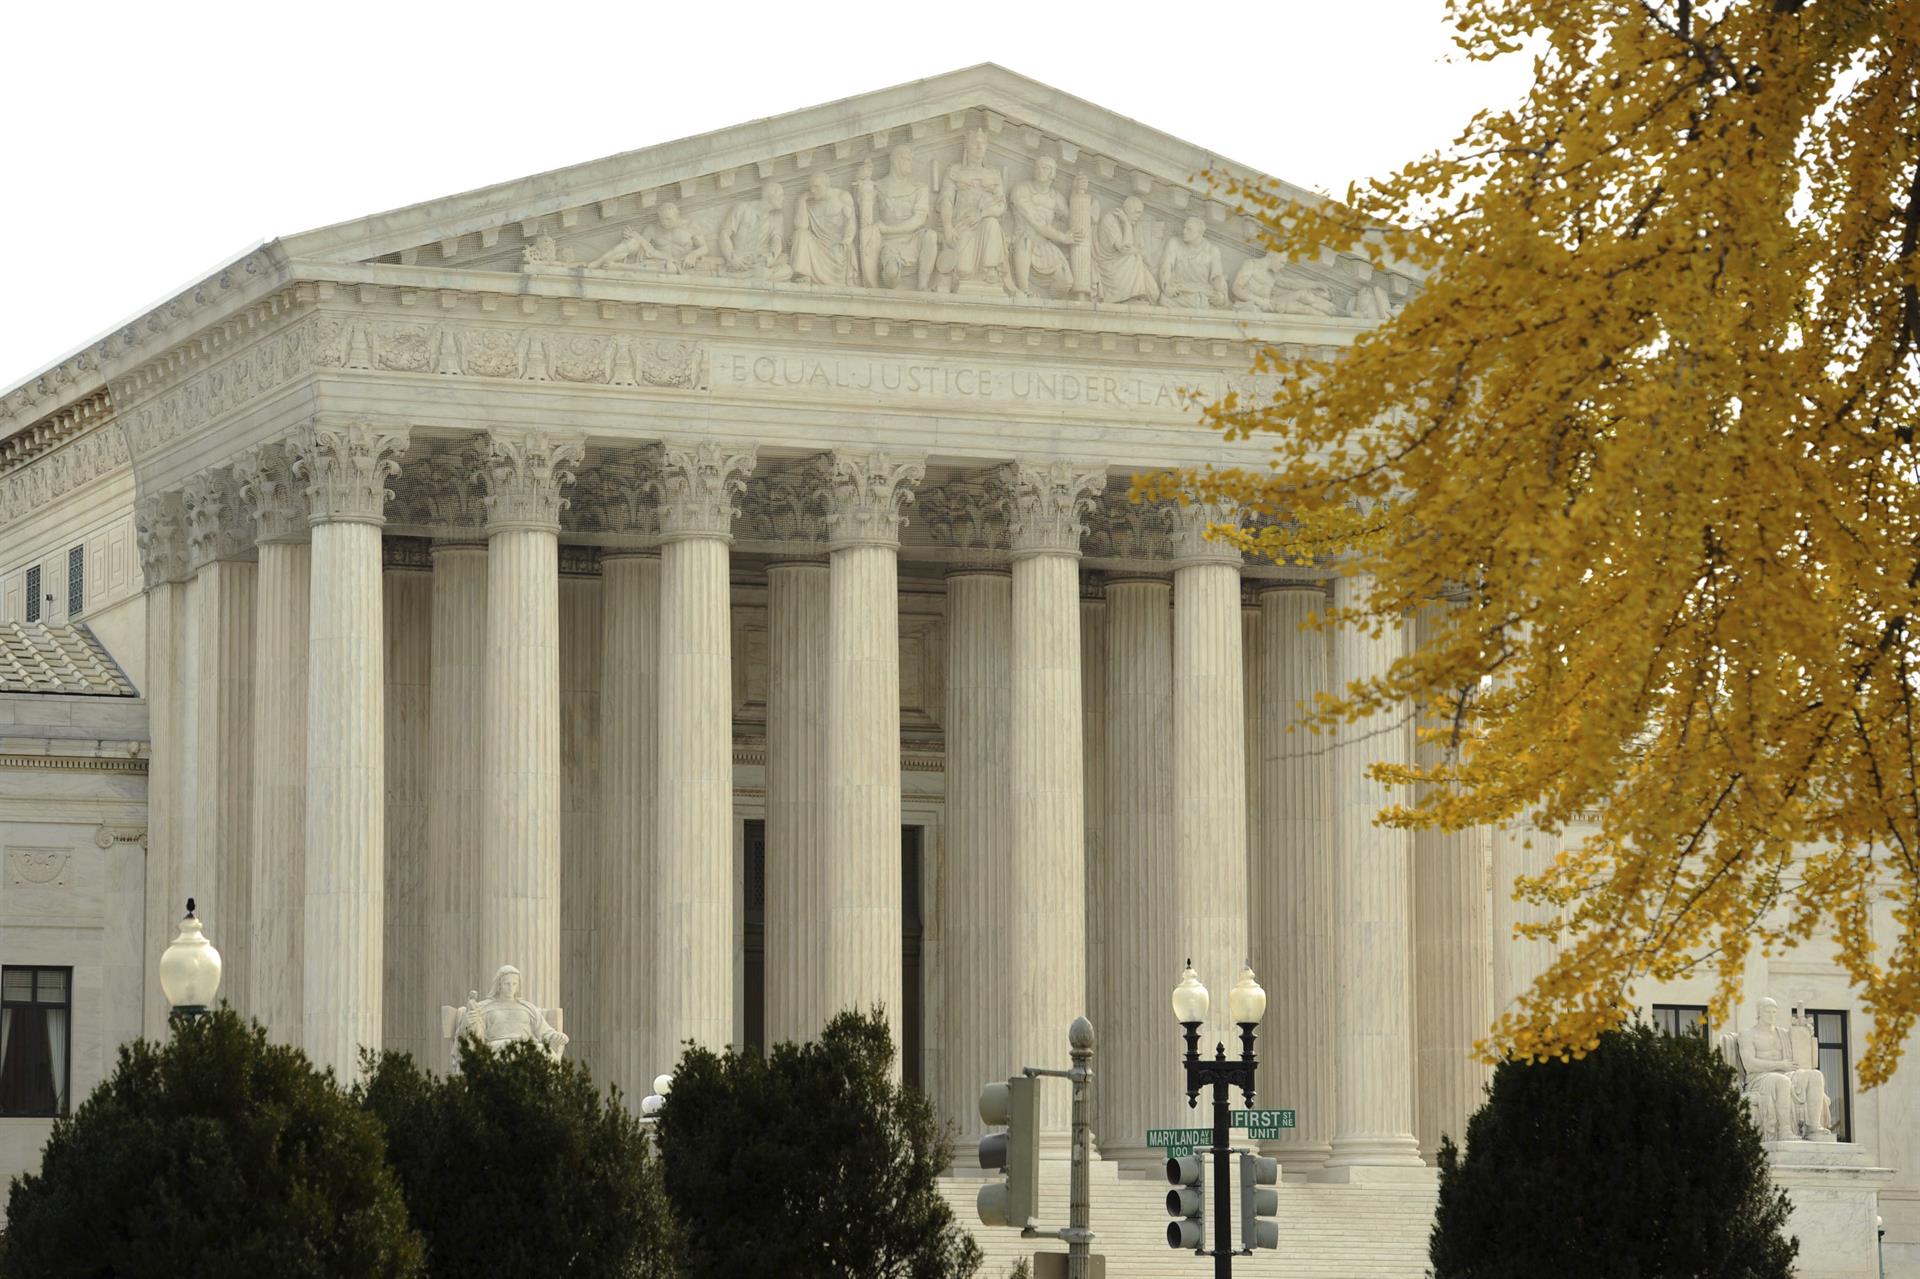 Vista exterior del Tribunal Supremo en Washington DC, Estados Unidos, imagen de archivo. EFE/MICHAEL REYNOLDS
